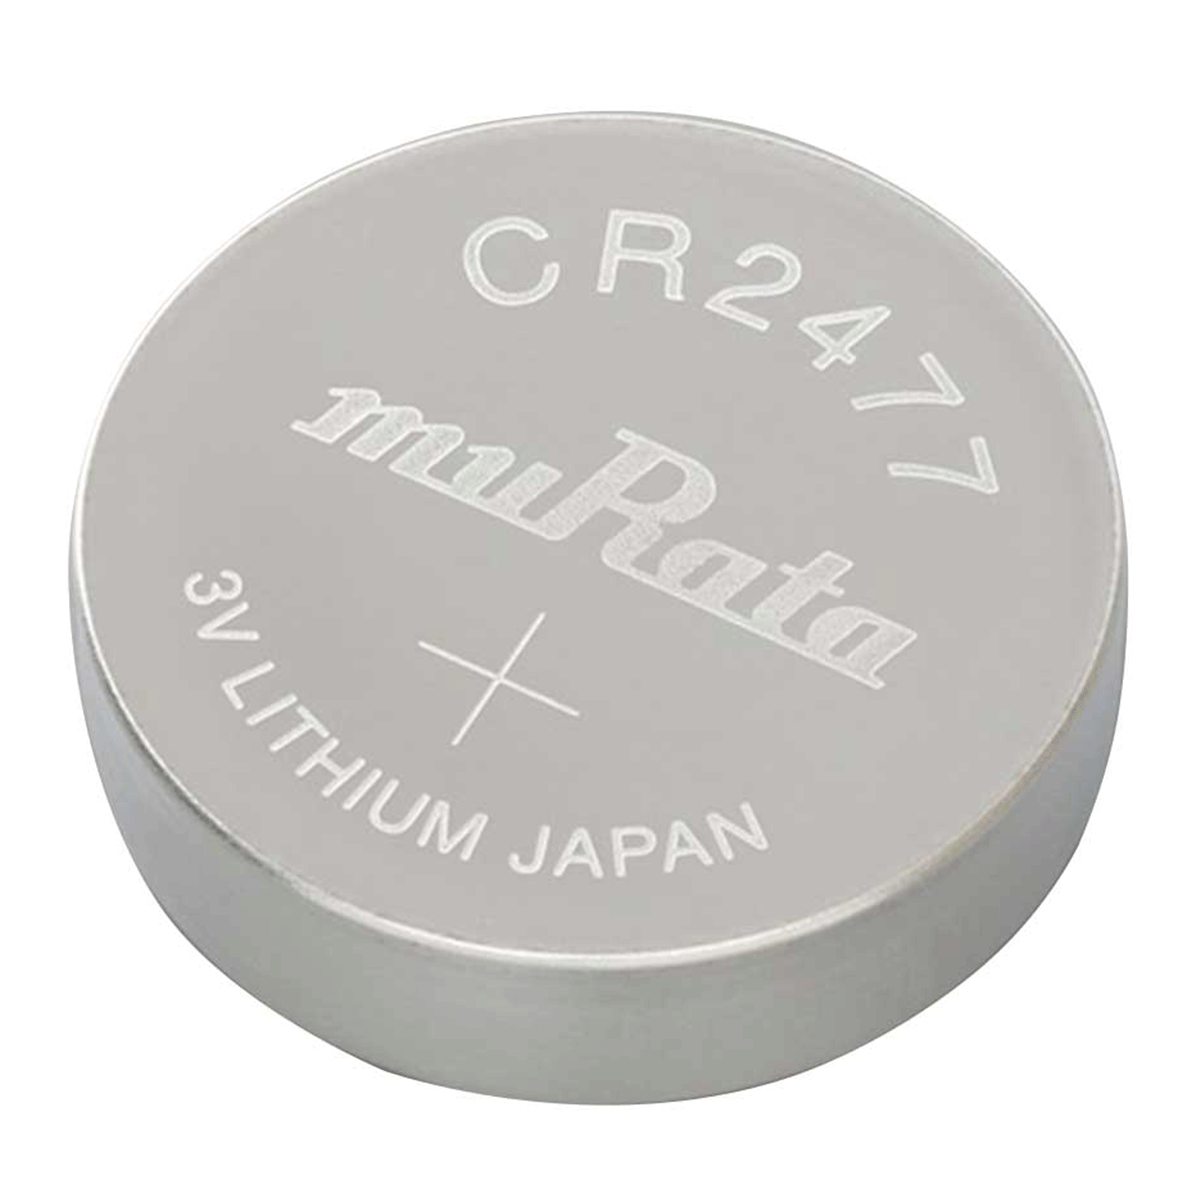 LiCB 10 Pack CR2477 3V Lithium Batteries CR 2477 Battery for